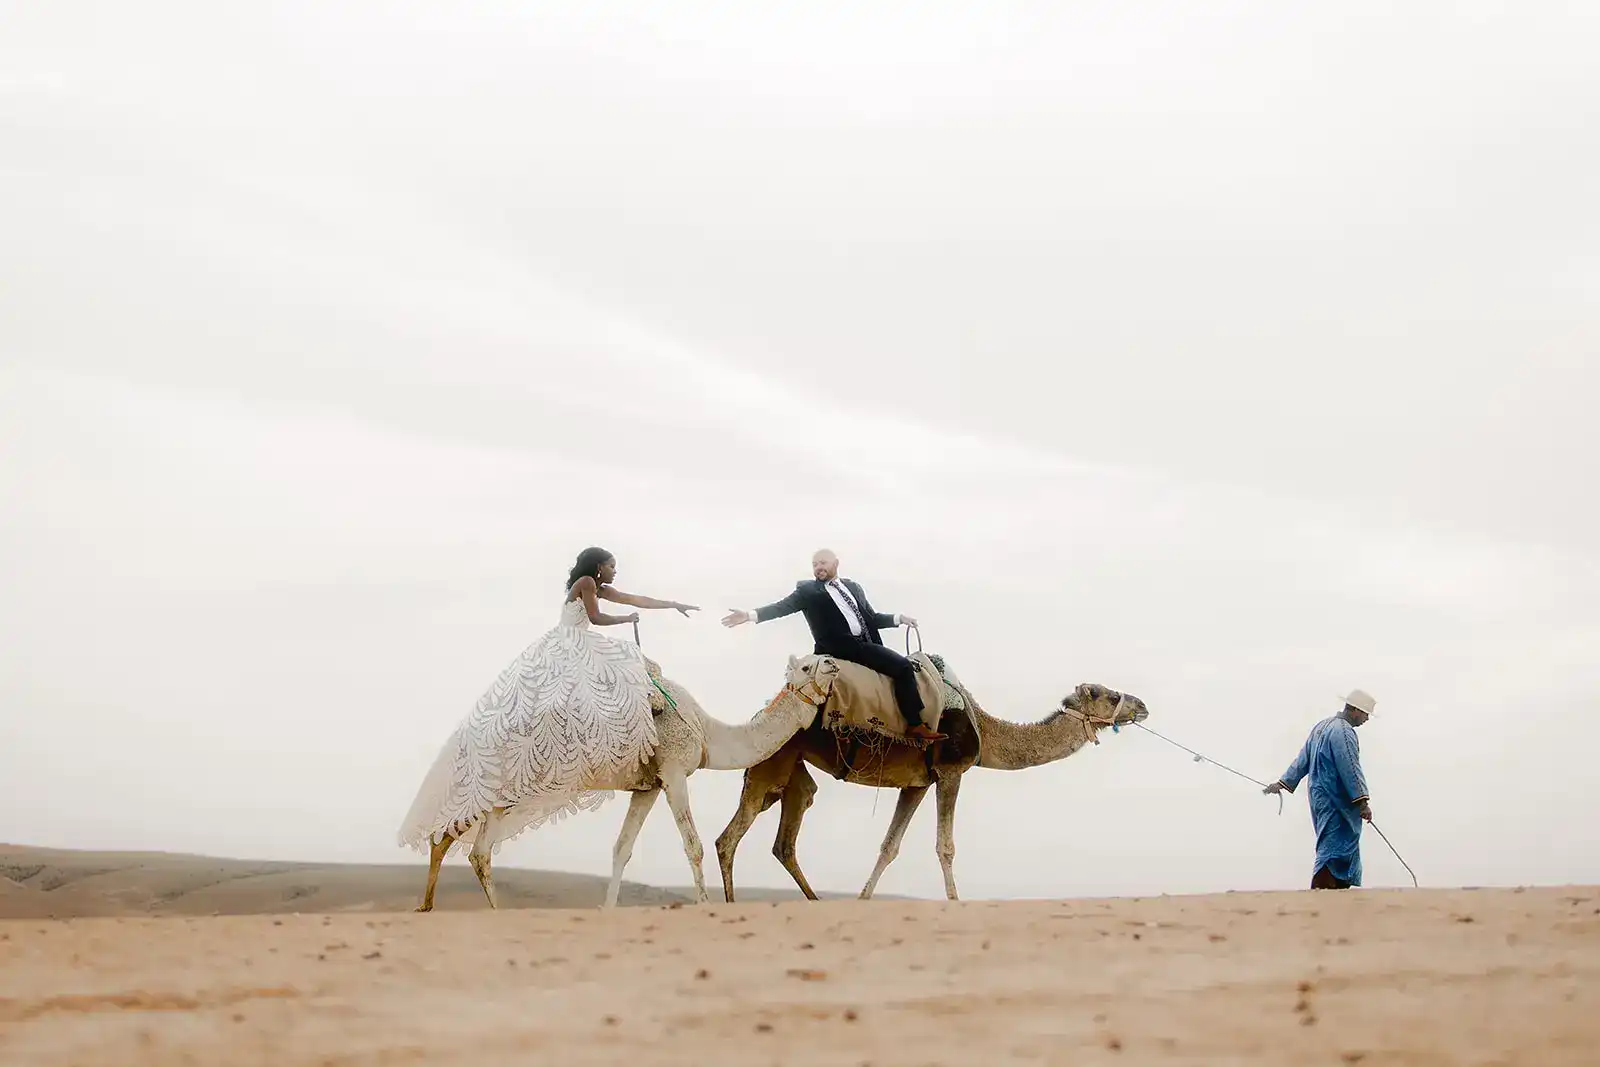 désert marrakech elopement